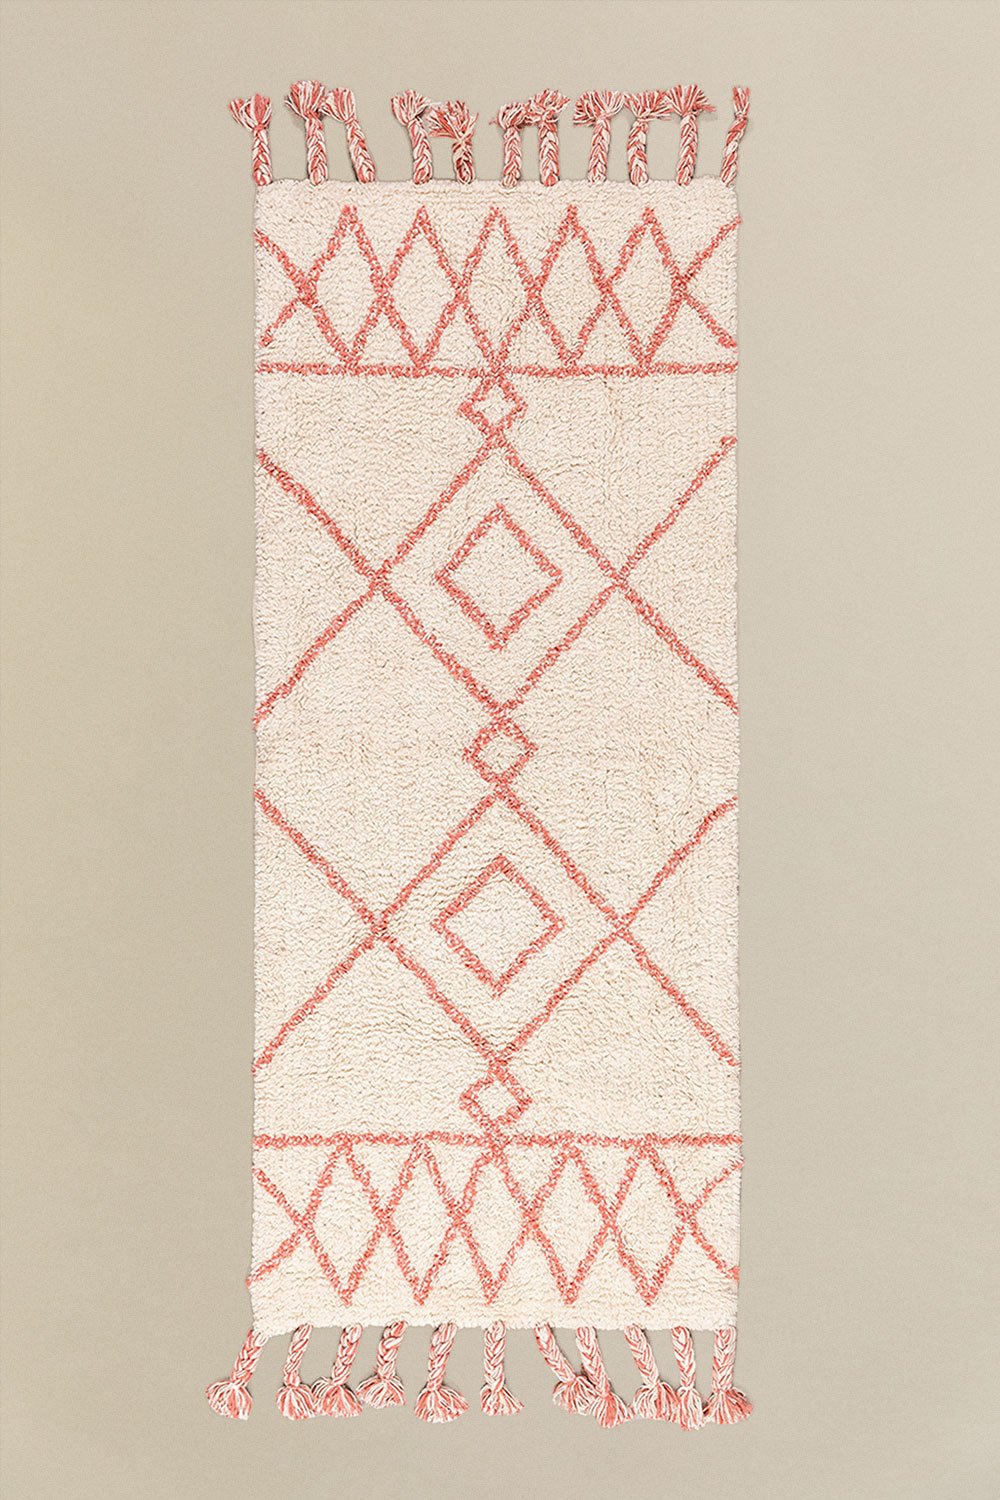 Tappetino da bagno in cotone (144x51,5 cm) Pere, immagine della galleria 1